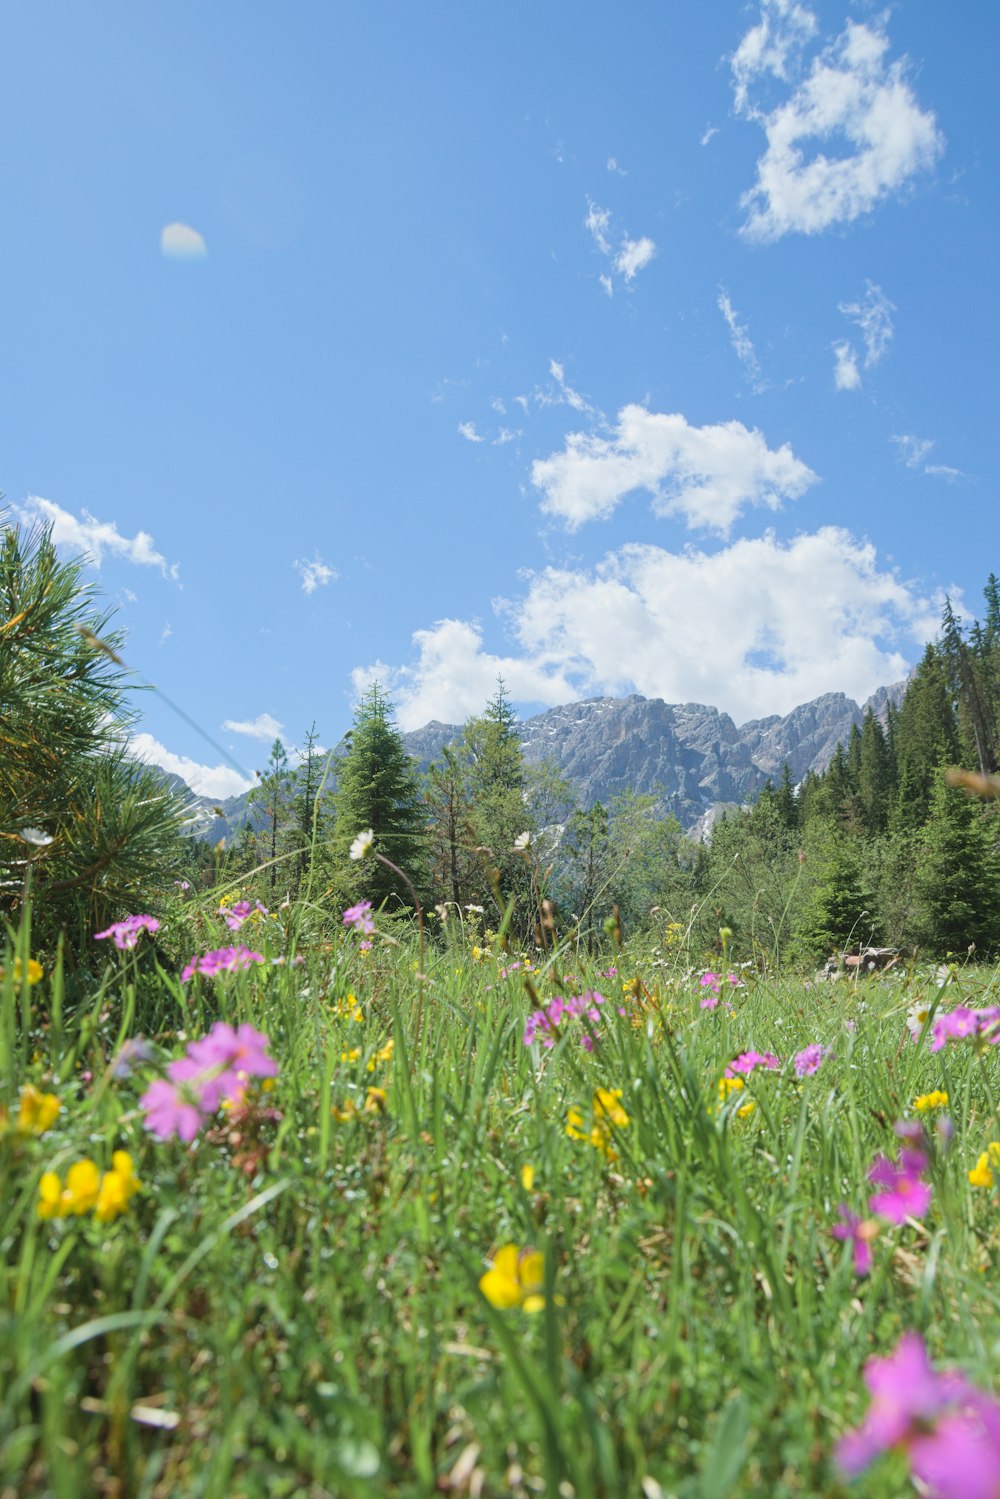 campo de flores roxas perto de árvores verdes e montanhas sob o céu azul durante o dia